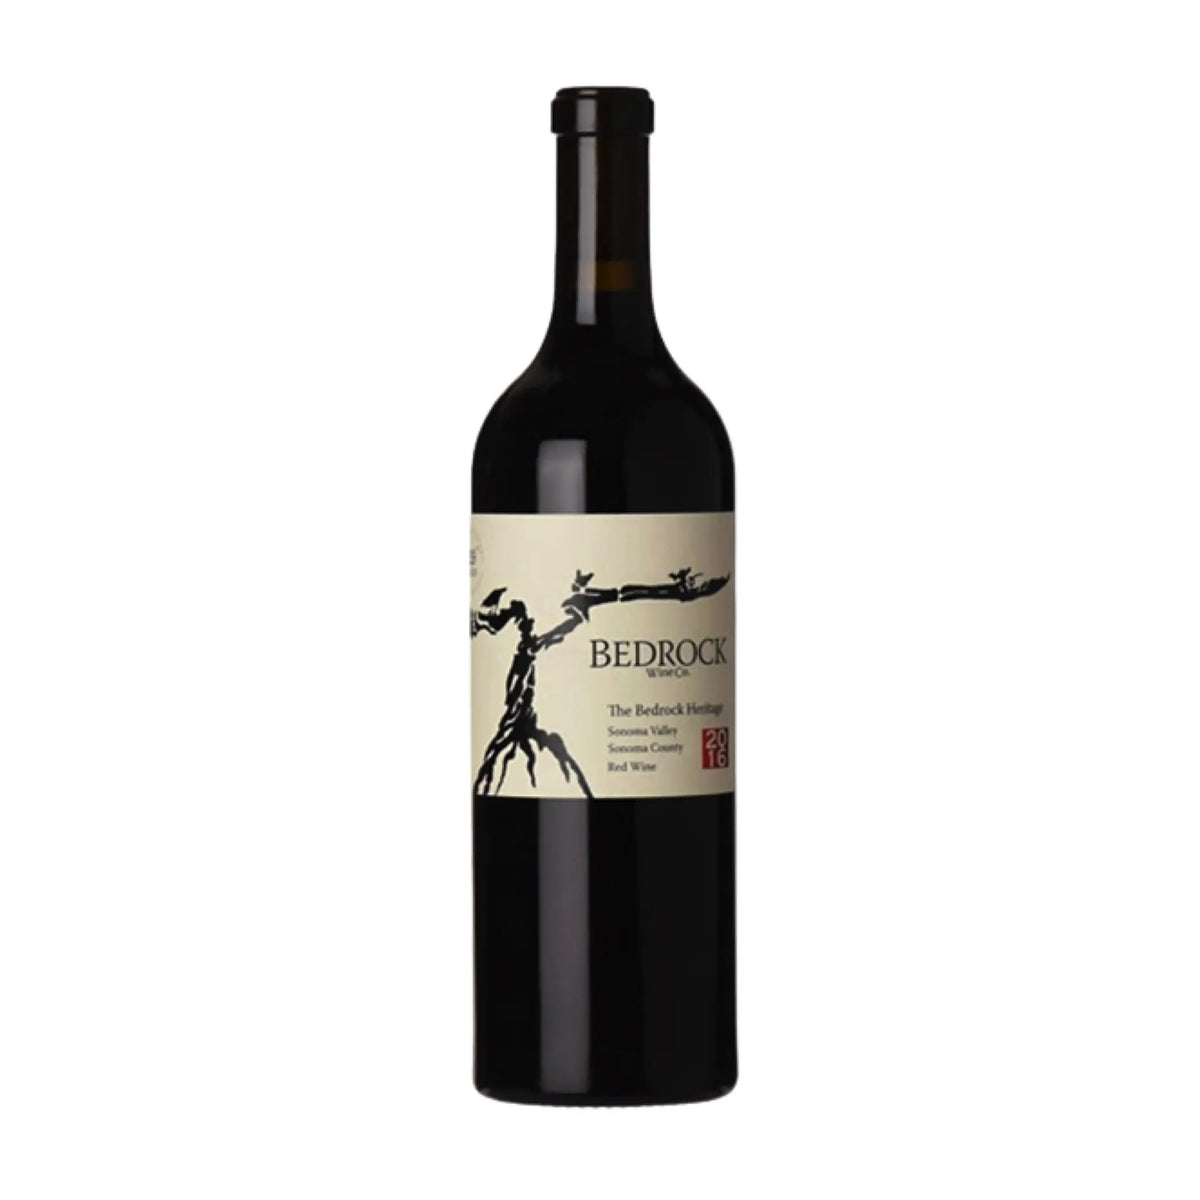 Bedrock Wine Co.-Rotwein-Zinfandel (Primitivo), Carignan-2018 Bedrock Vineyard Red Heritage Wine-WINECOM